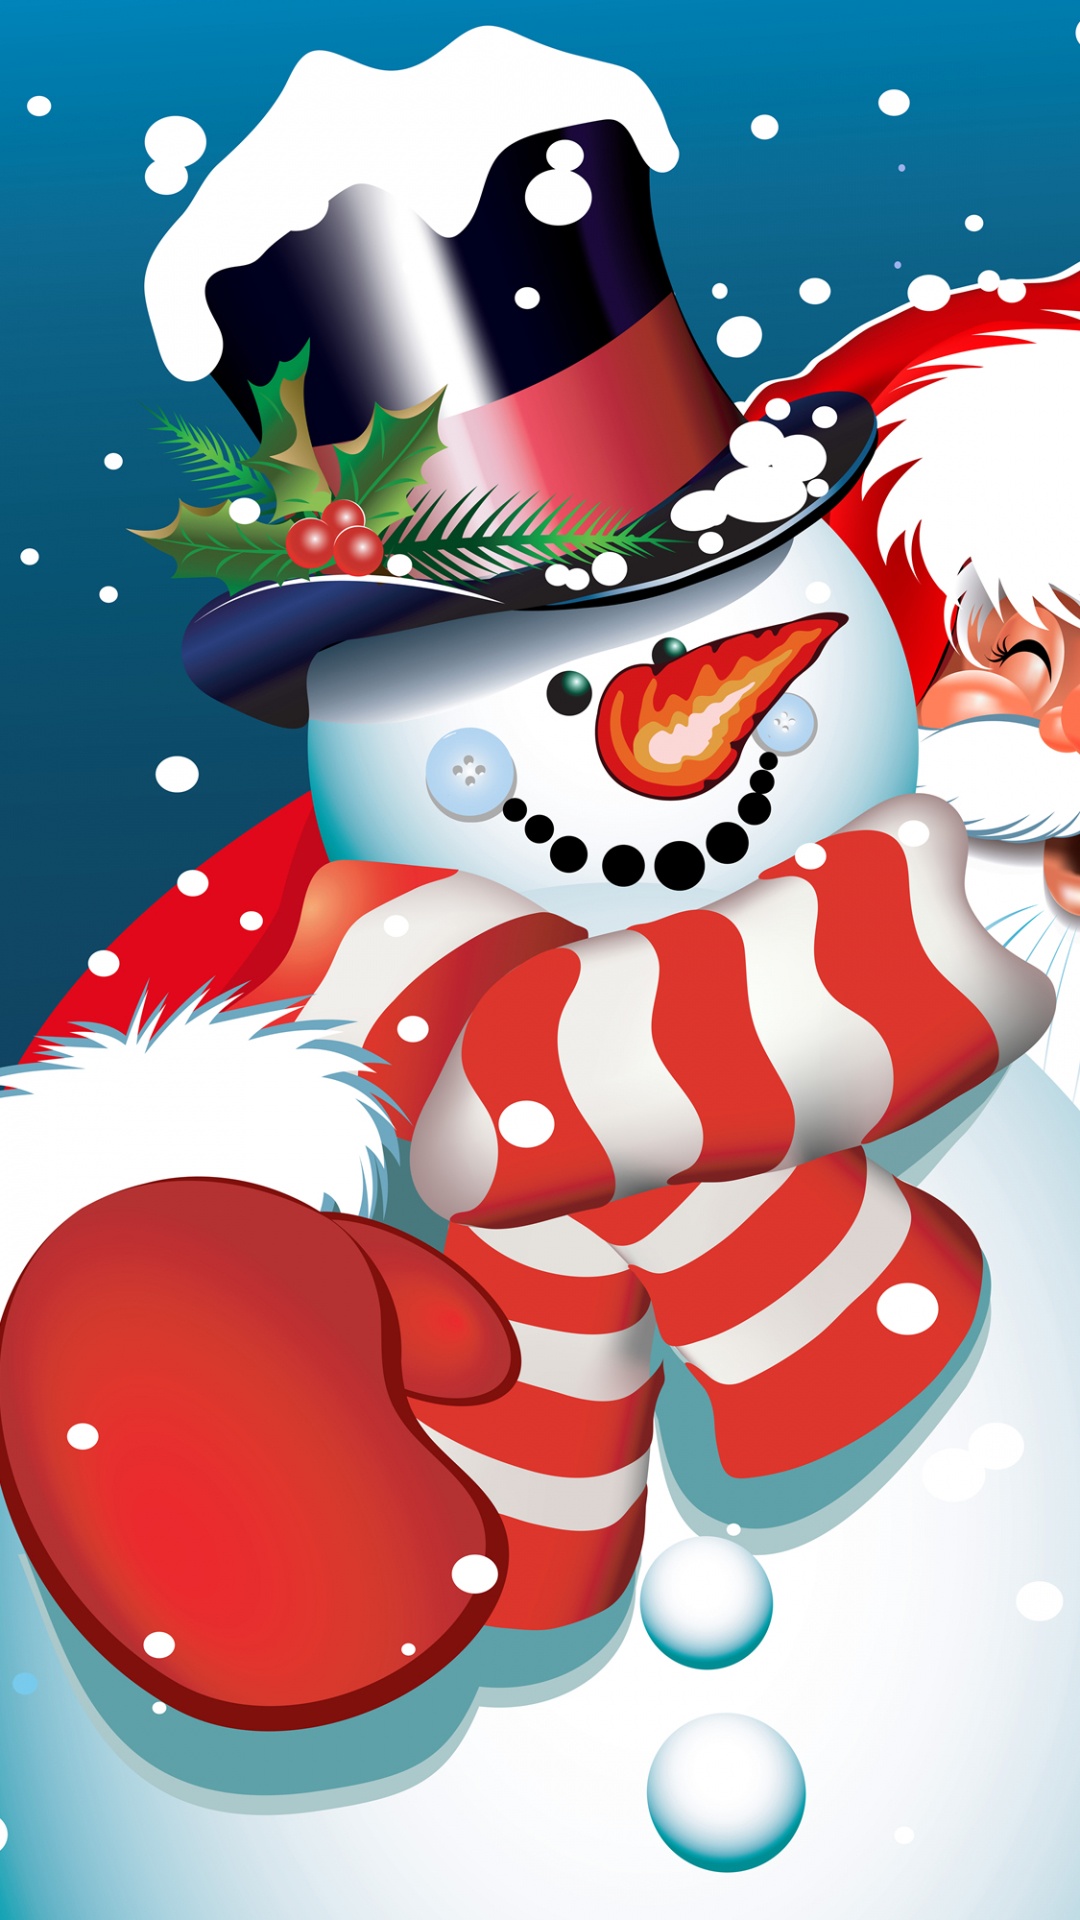 Santa Claus, Le Jour De Noël, Bonhomme, Cartoon, Illustration. Wallpaper in 1080x1920 Resolution